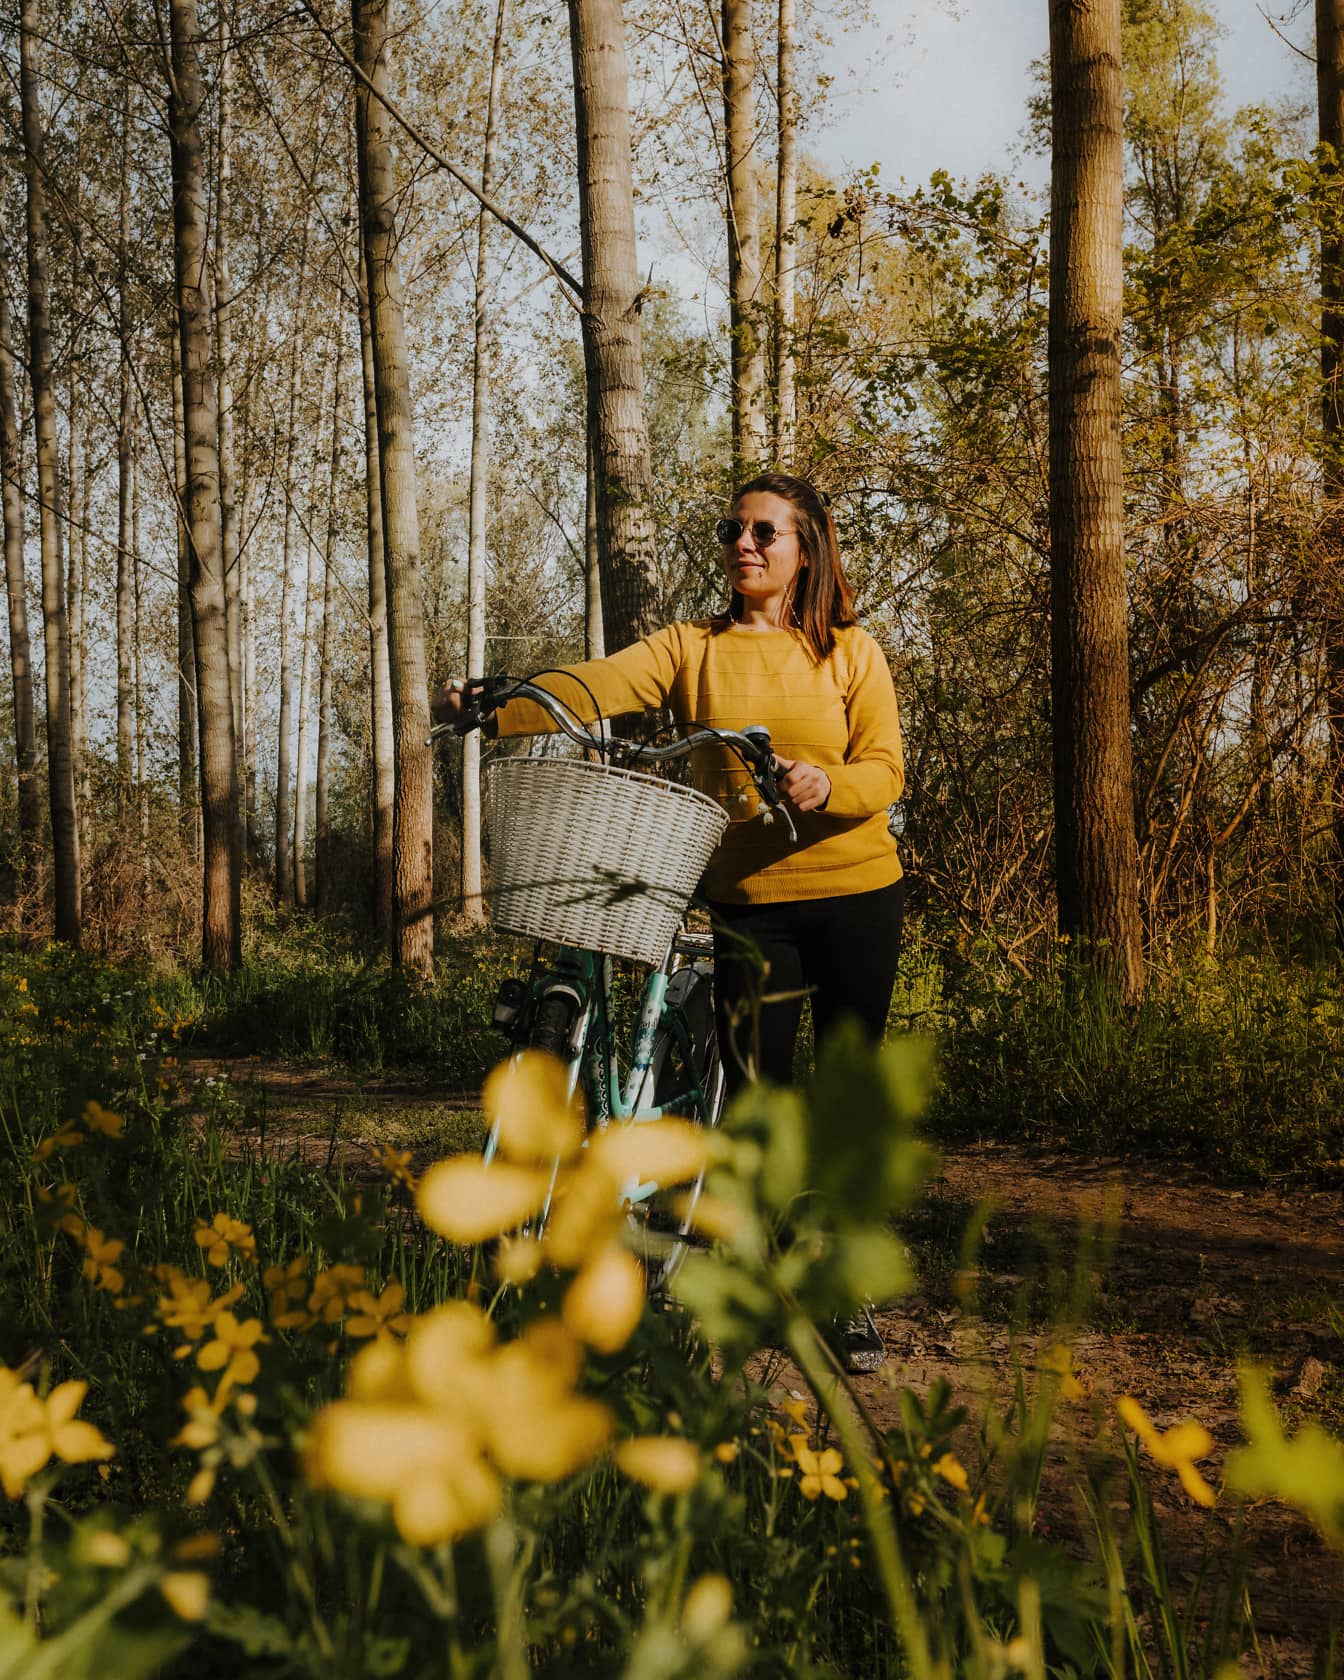 Một người phụ nữ vui vẻ đi bộ trên đường mòn trong rừng với chiếc xe đạp của mình trong rừng vào một ngày xuân đầy nắng